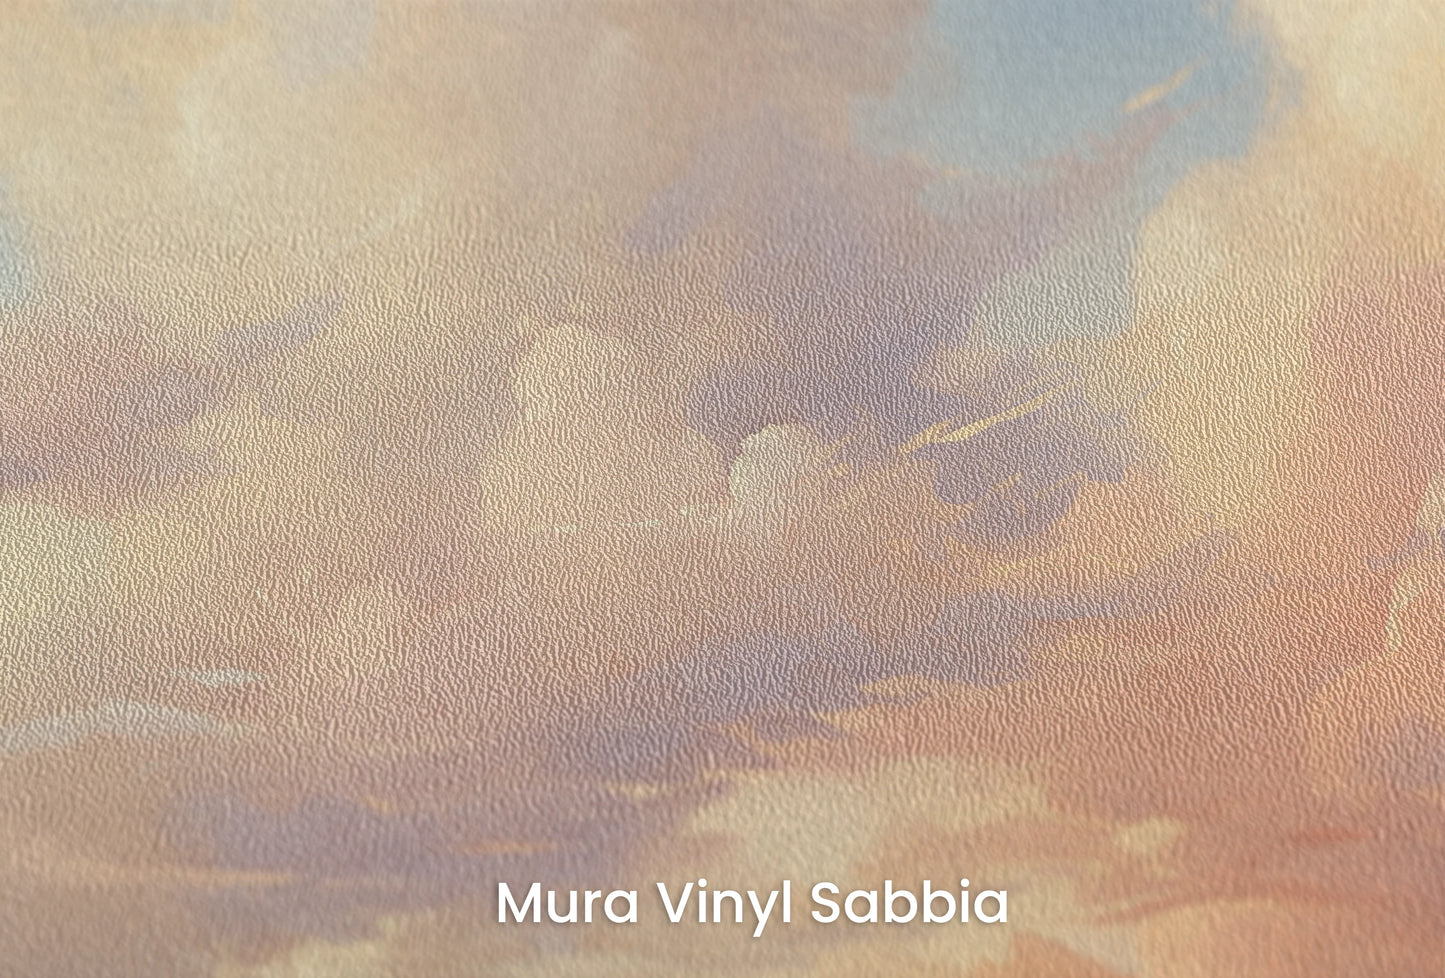 Zbliżenie na artystyczną fototapetę o nazwie Evening Glow na podłożu Mura Vinyl Sabbia struktura grubego ziarna piasku.